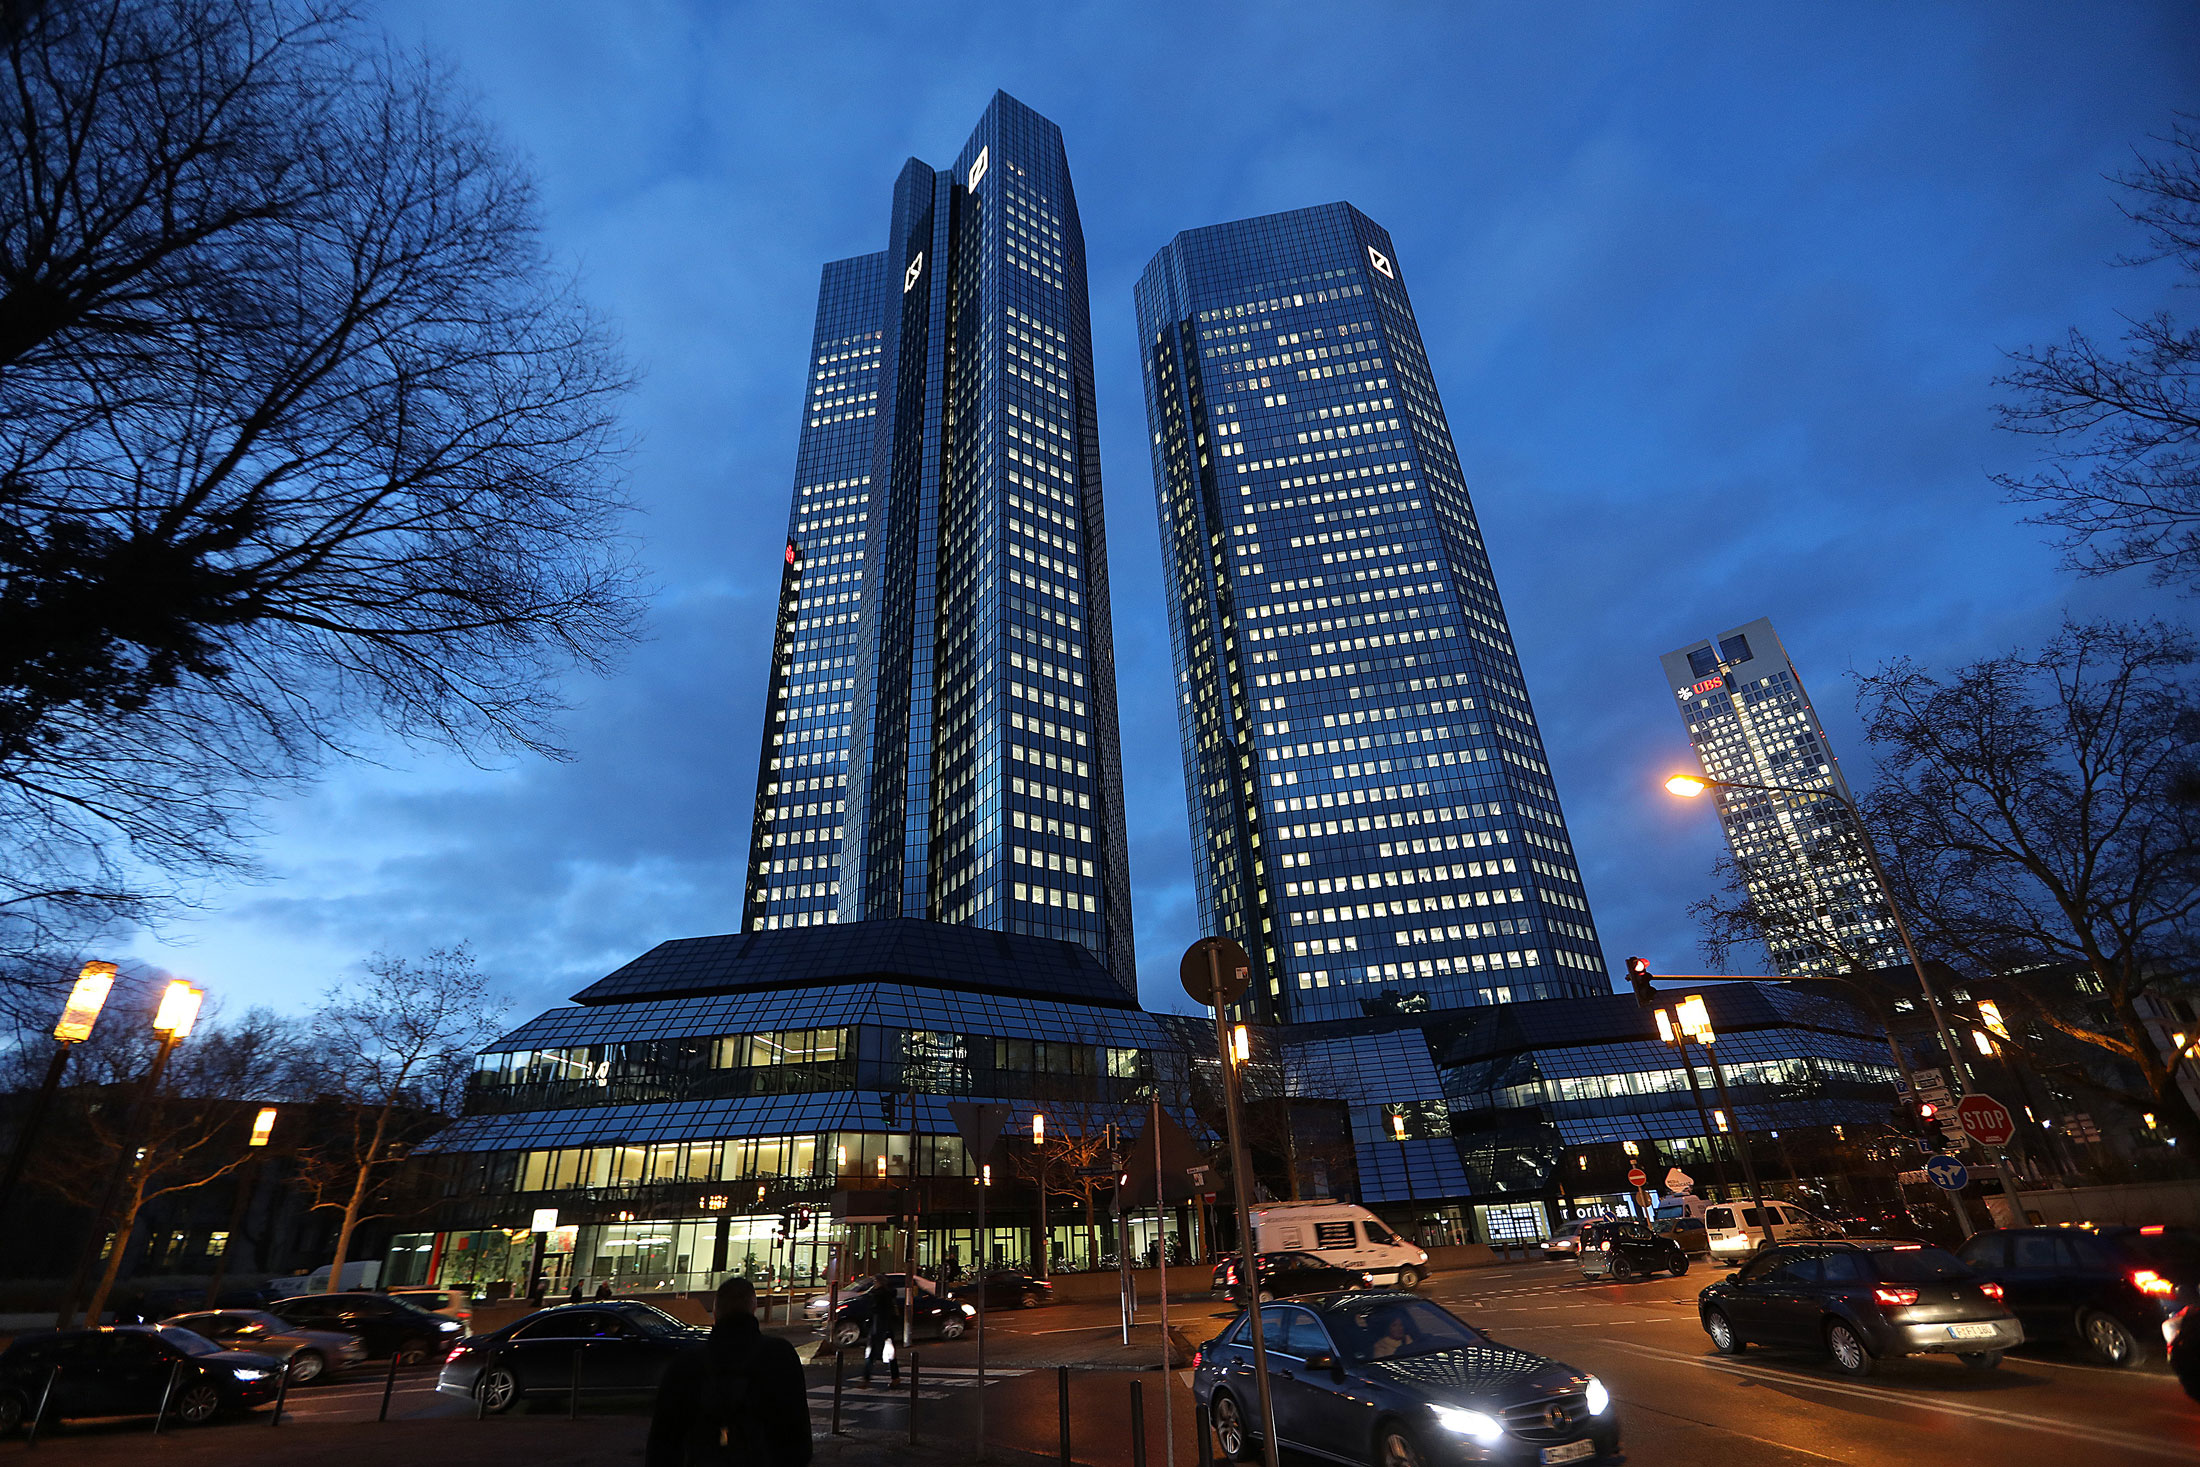 The Deutsche Bank headquarters in Frankfurt.